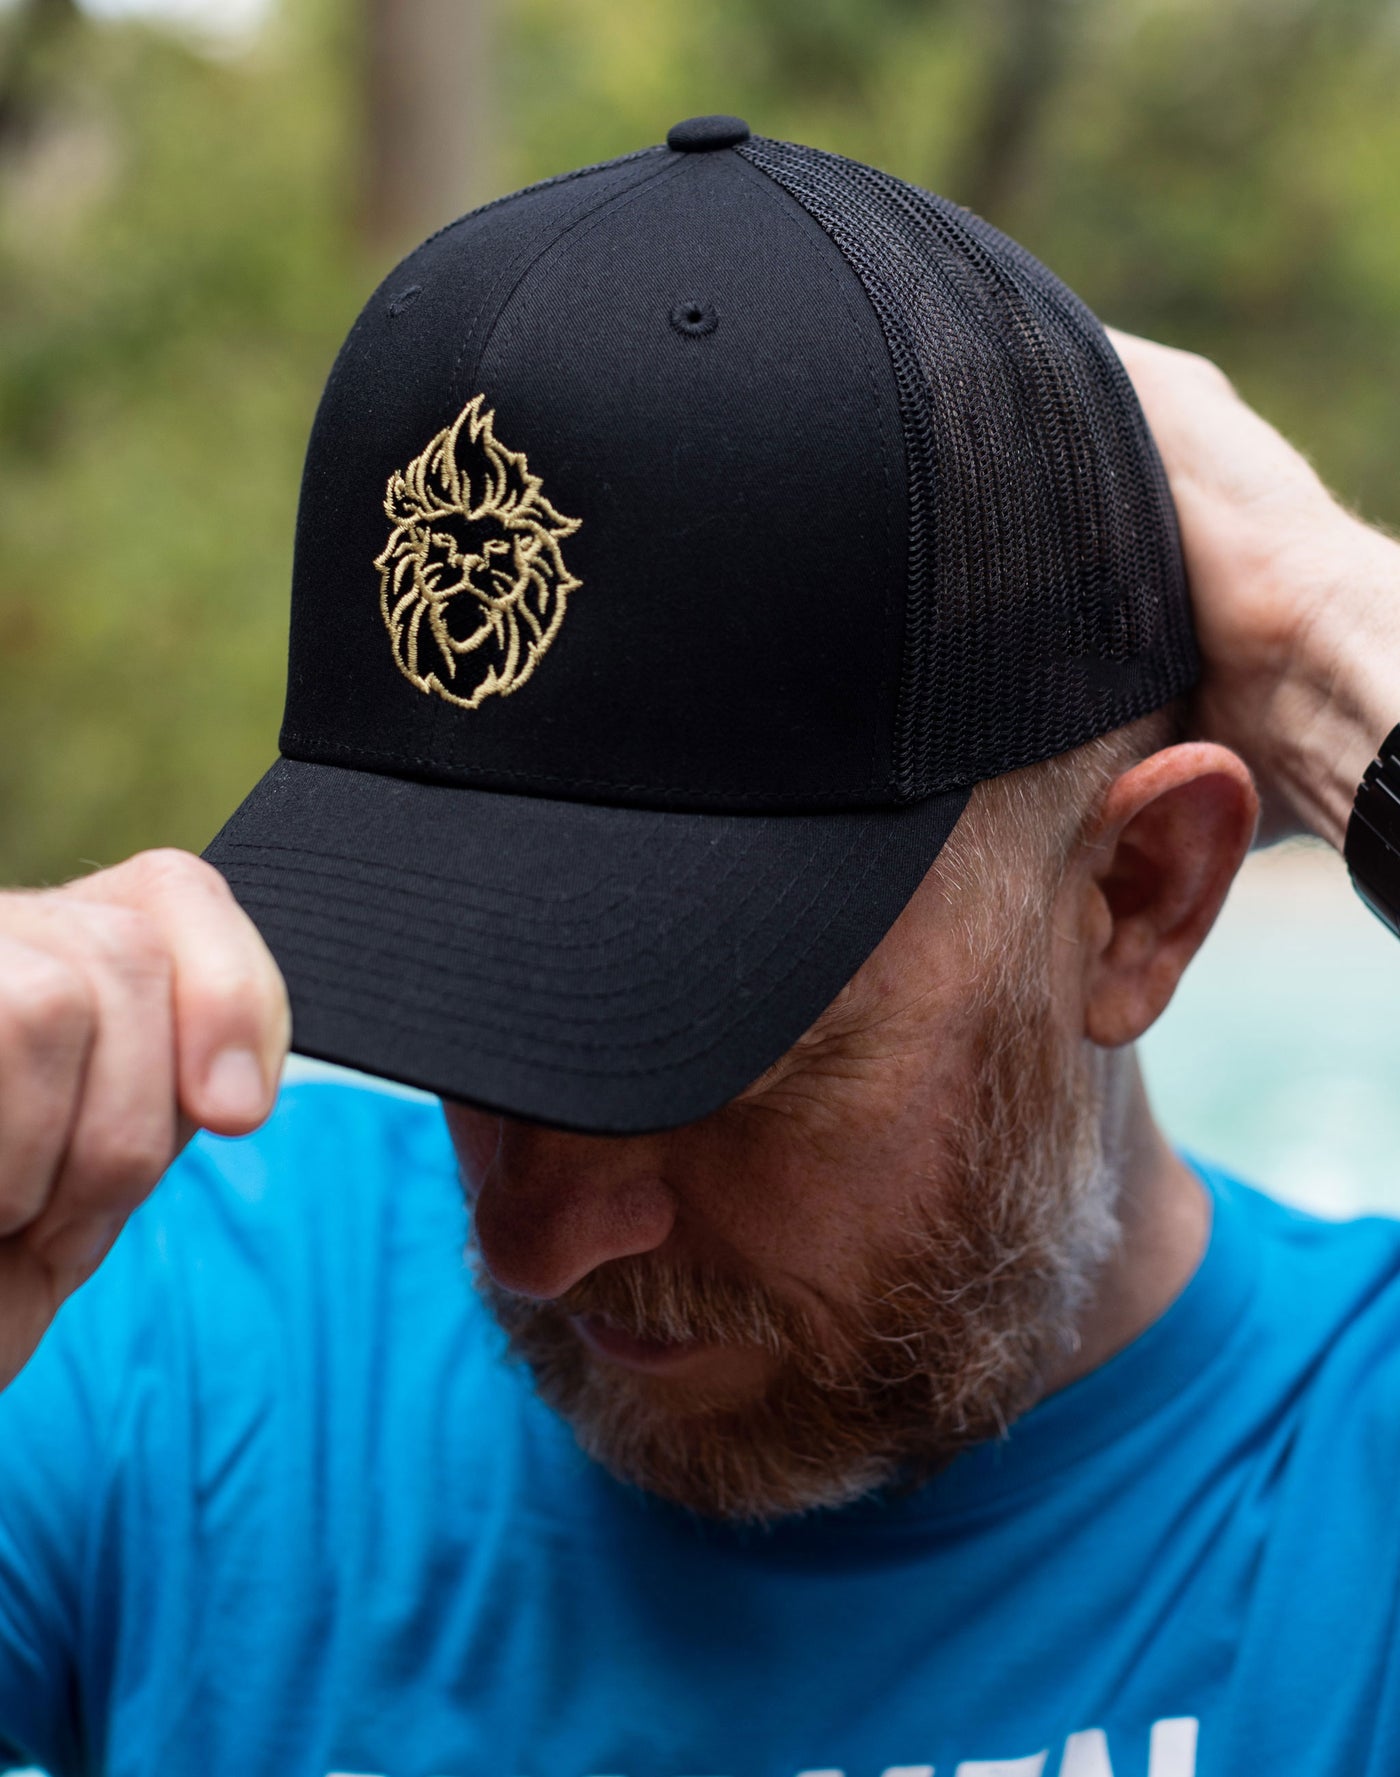 Rebel Lion Embroidered Snapback Black Trucker Hat